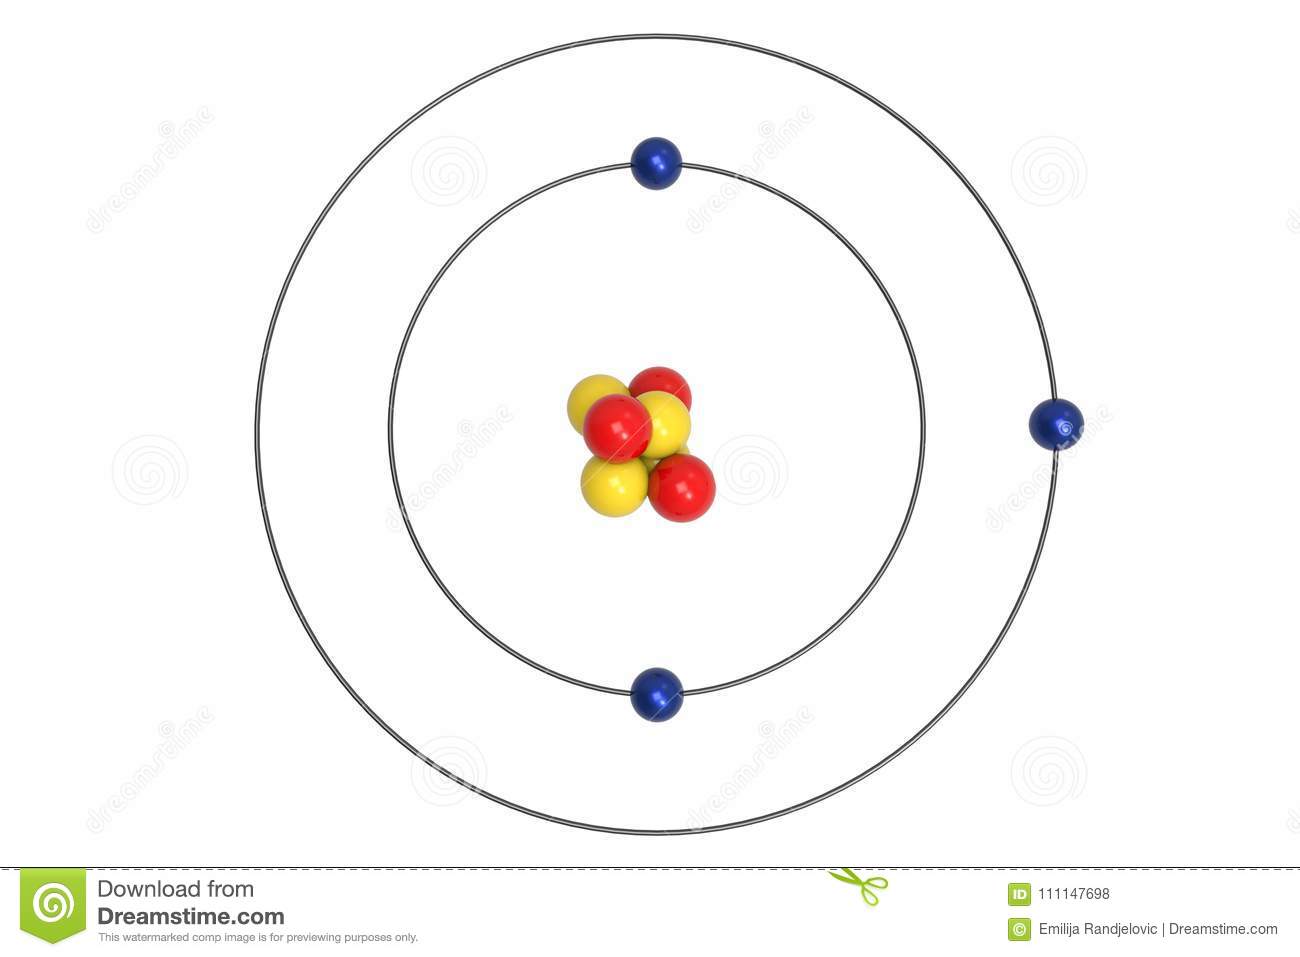 <p>Name this atom</p>